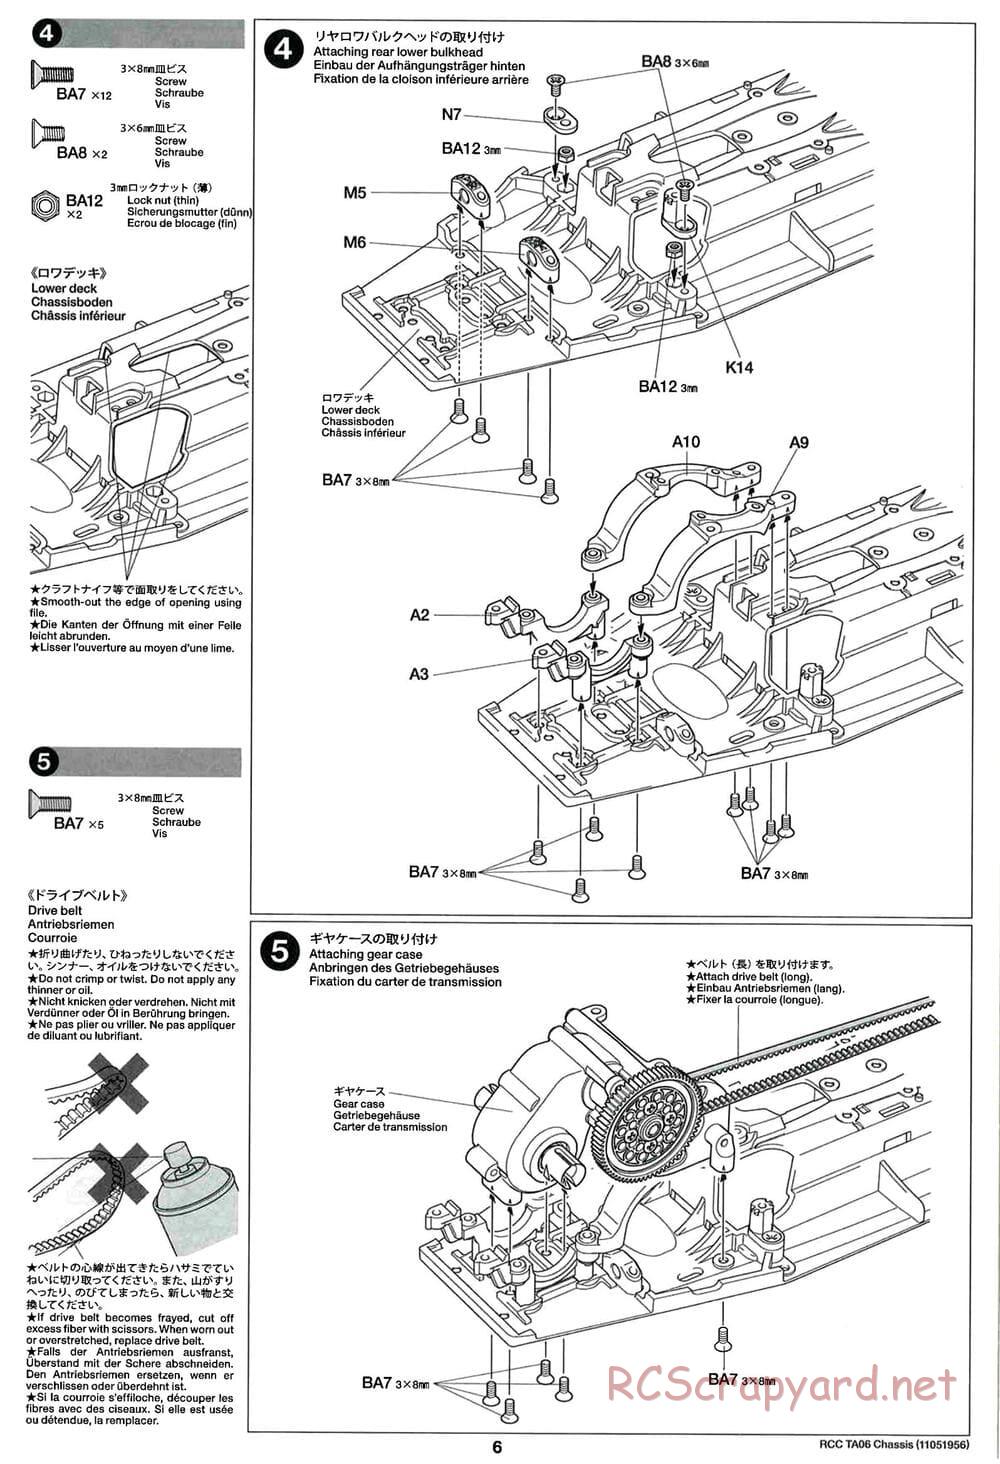 Tamiya - TA06 Chassis - Manual - Page 6